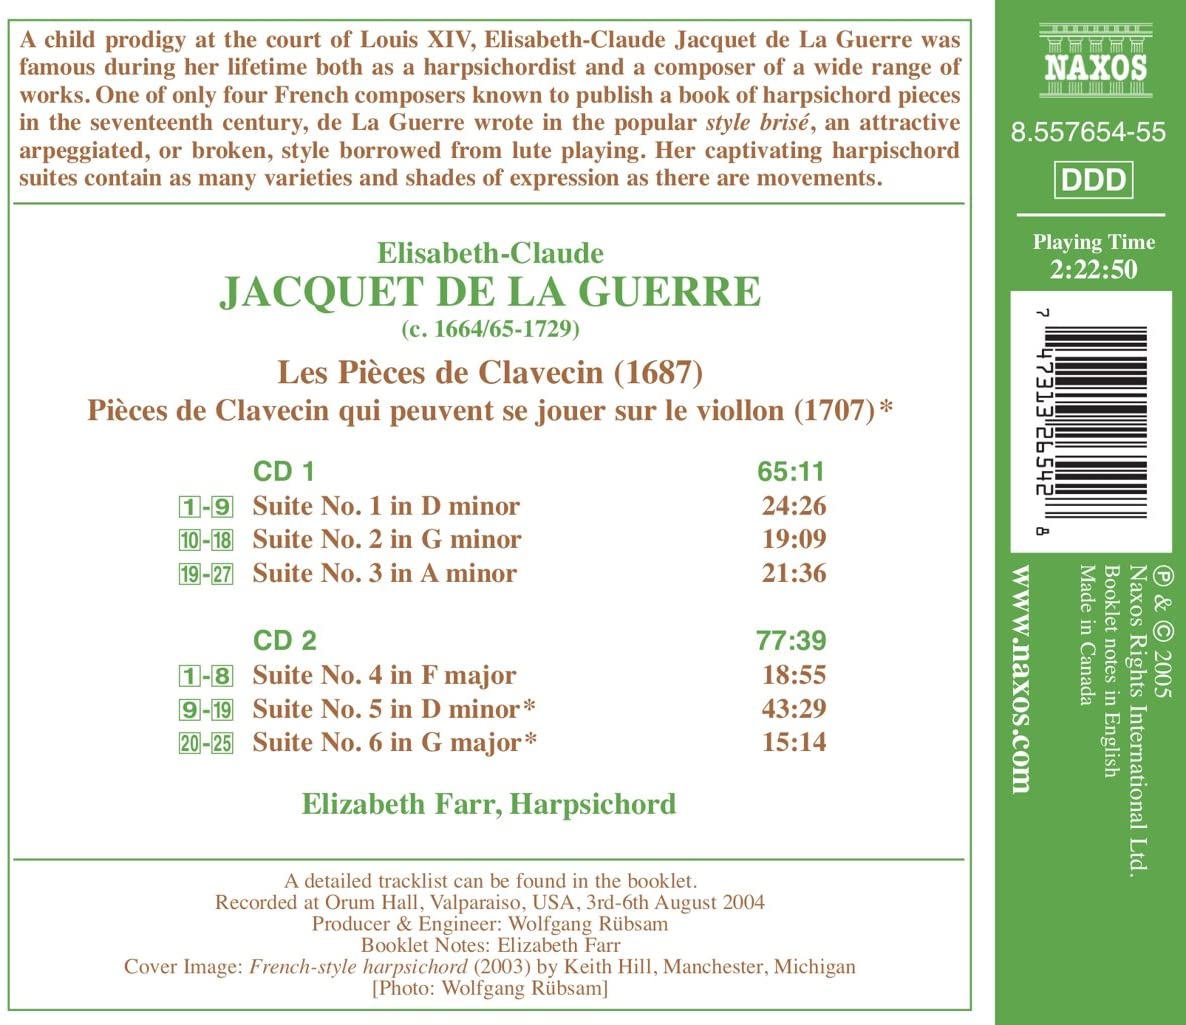 JACQUET DE LA GUERRE: Harpsihord suites - slide-1